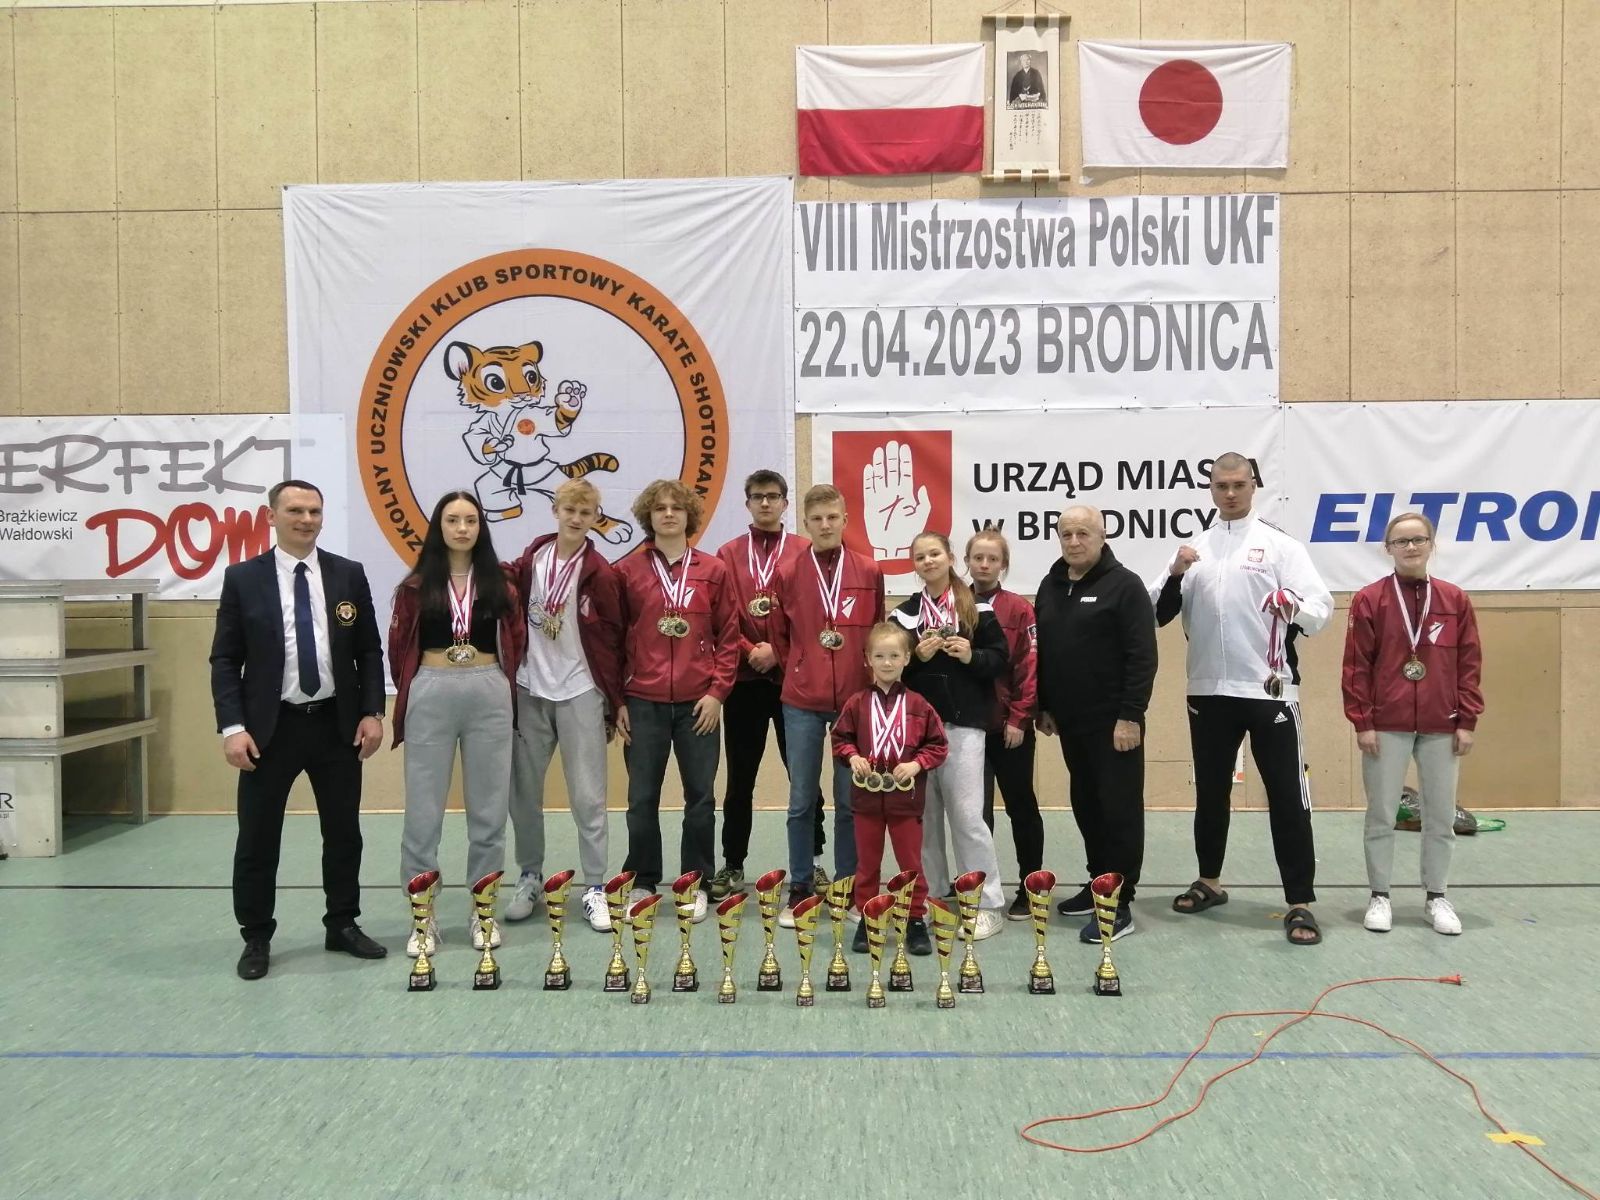 Ekipa Bushikanu na VIII Mistrzostwach Polski w Karate UKF w Brodnicy.jpg